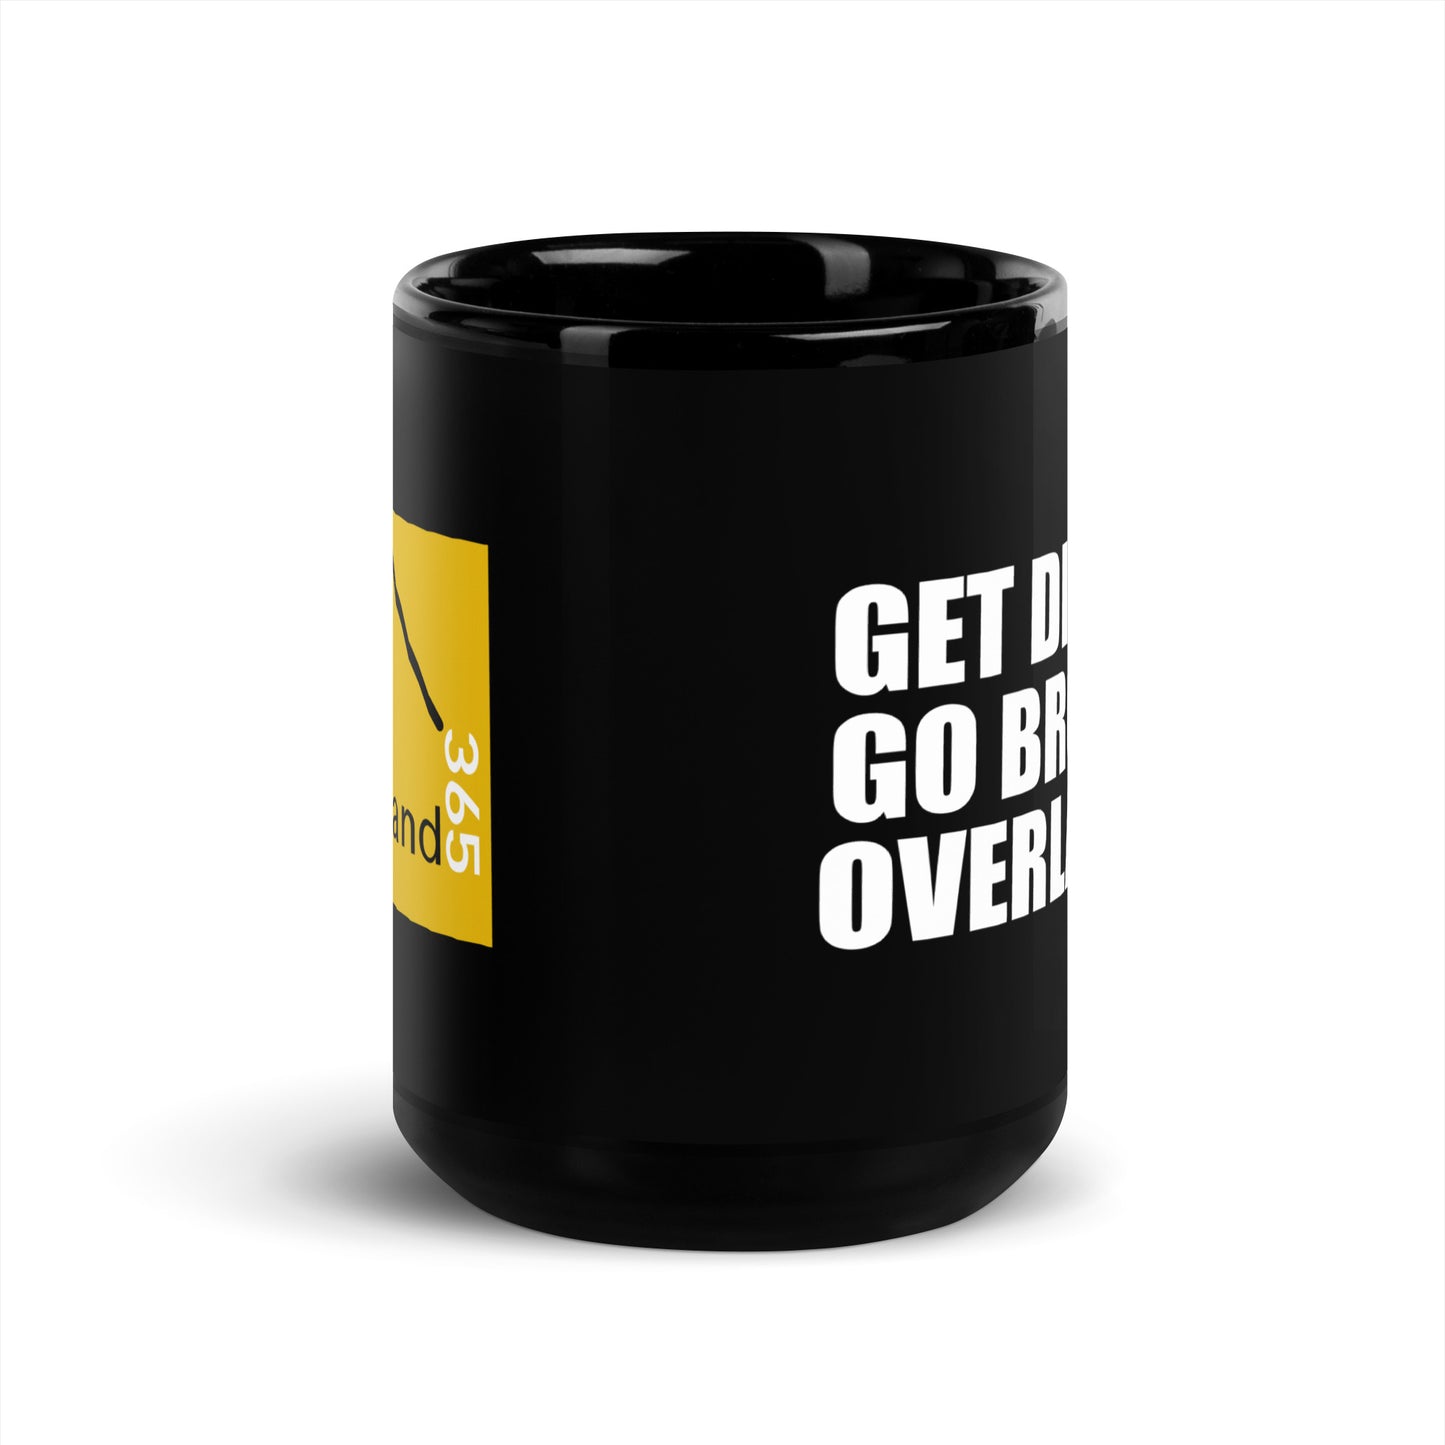 Get Dirty. Go broke. Overland. - 15oz Coffee Mug. overland365.com